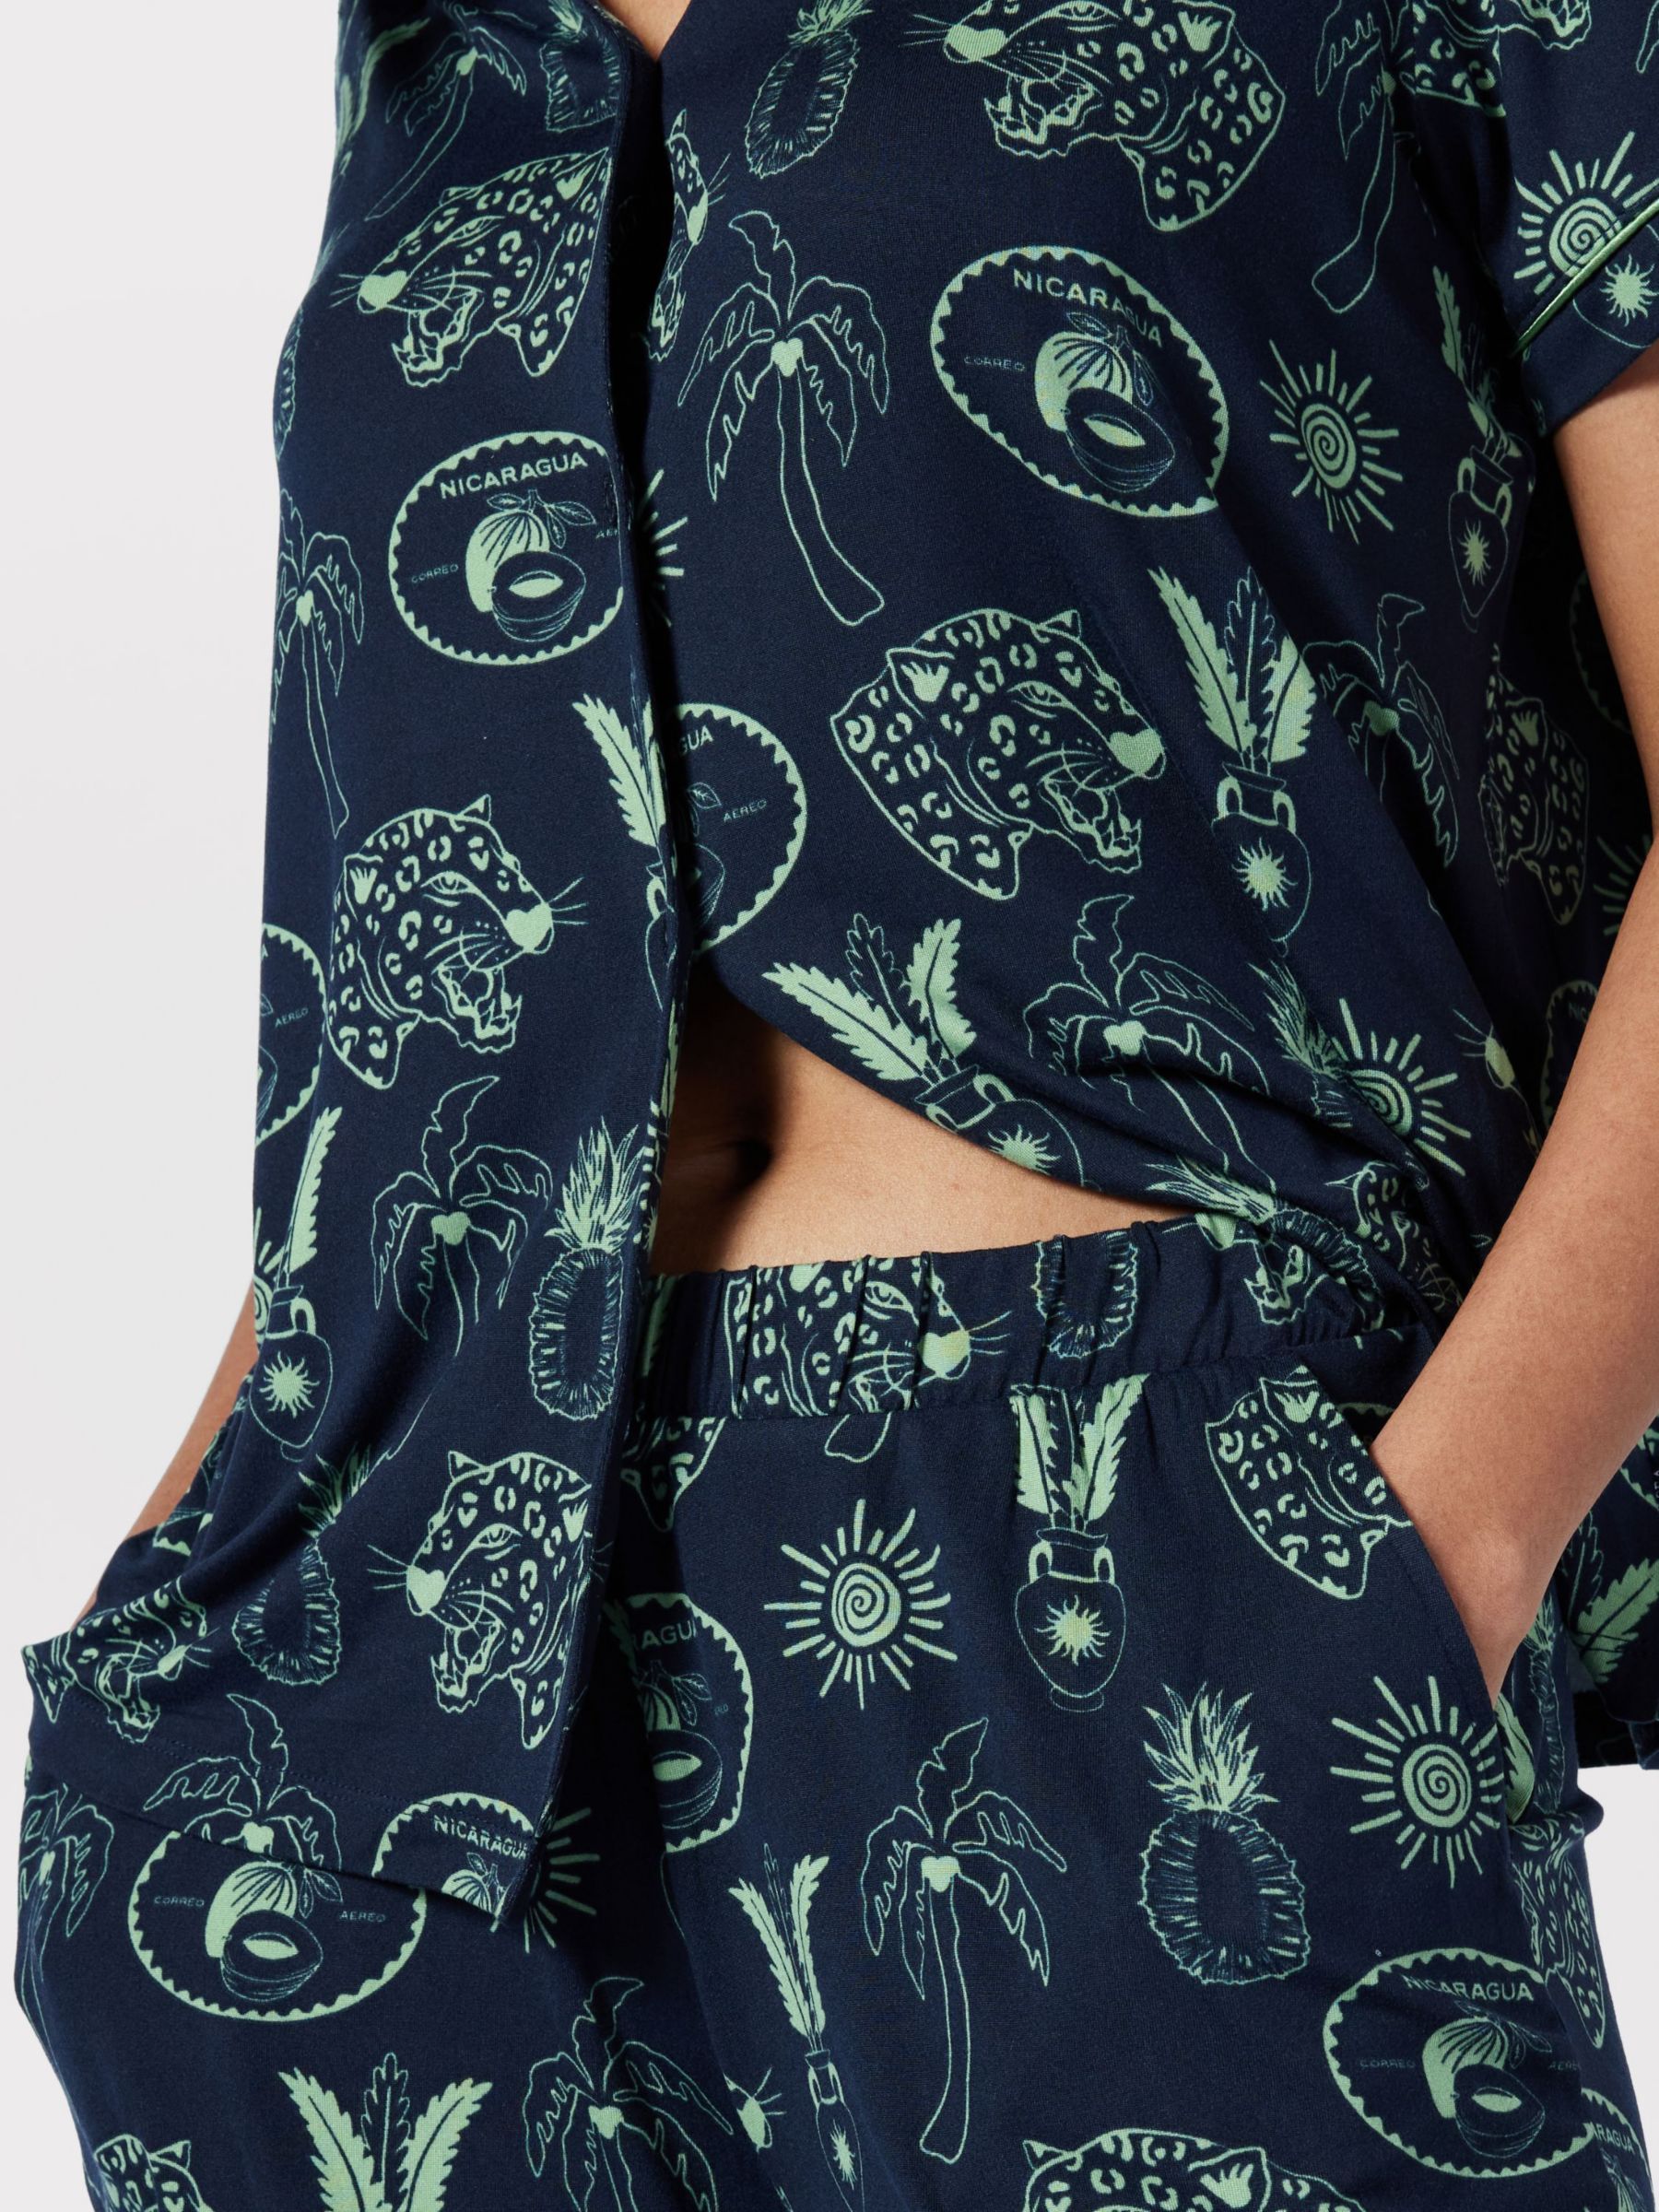 Buy Chelsea Peers Tropical Holiday Print Short Pyjamas, Navy/Green Online at johnlewis.com